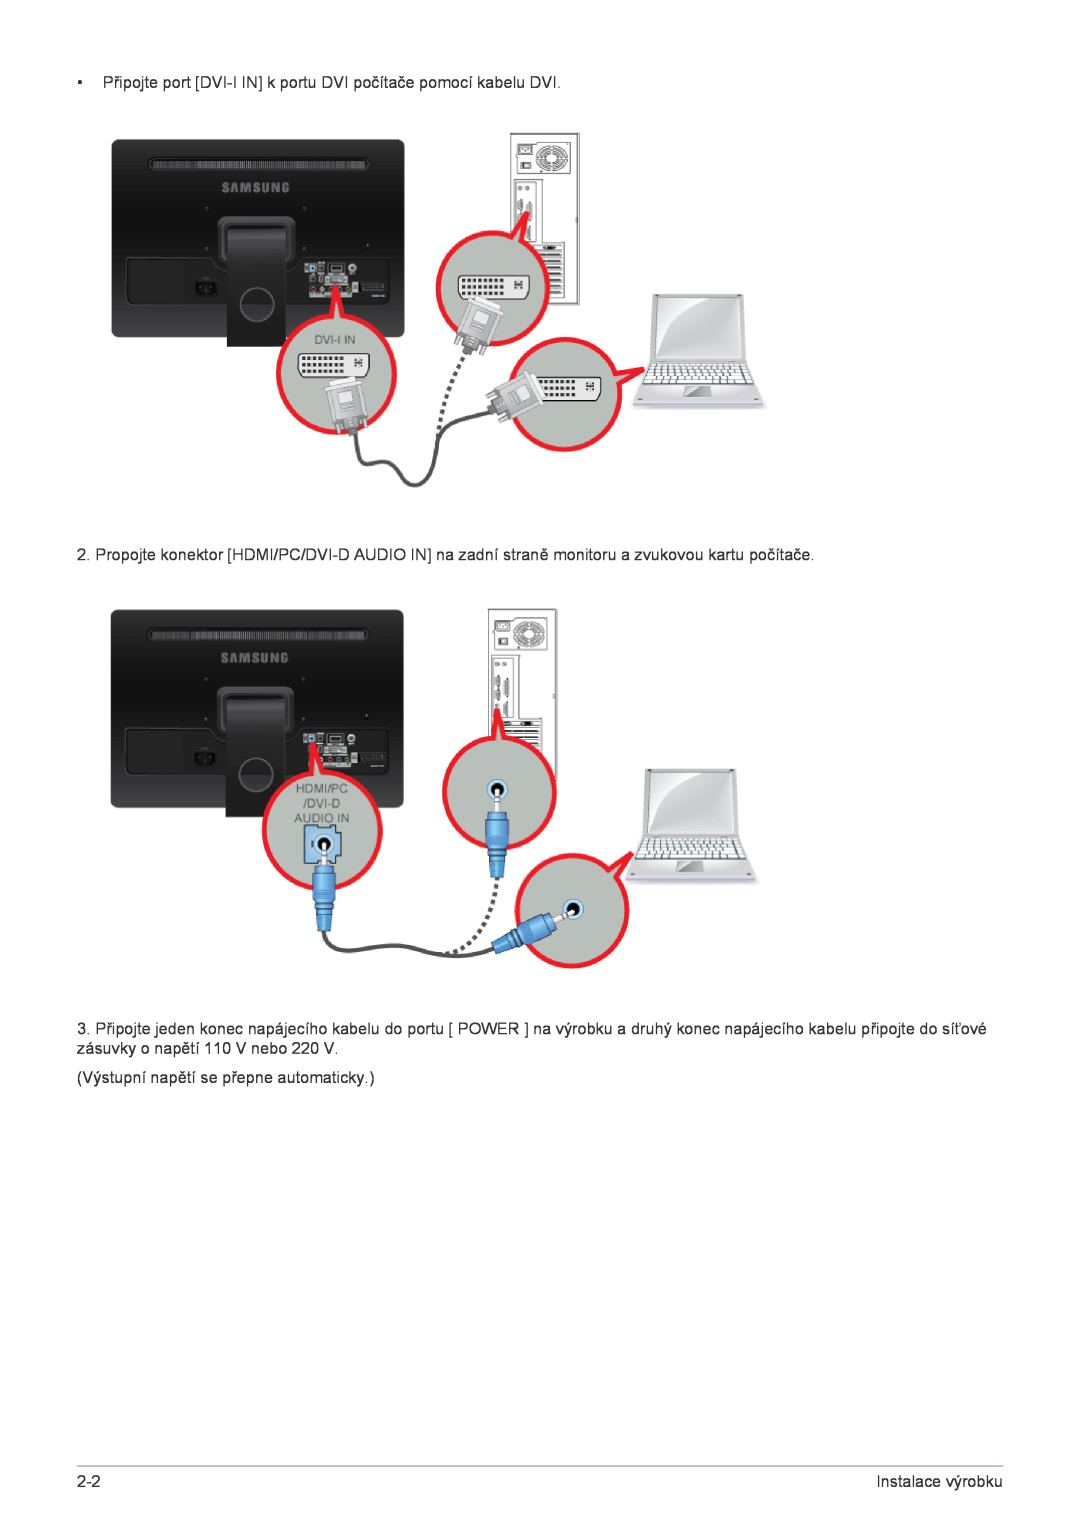 Samsung LS22FMDGF/EN Připojte port DVI-I IN k portu DVI počítače pomocí kabelu DVI, Výstupní napětí se přepne automaticky 